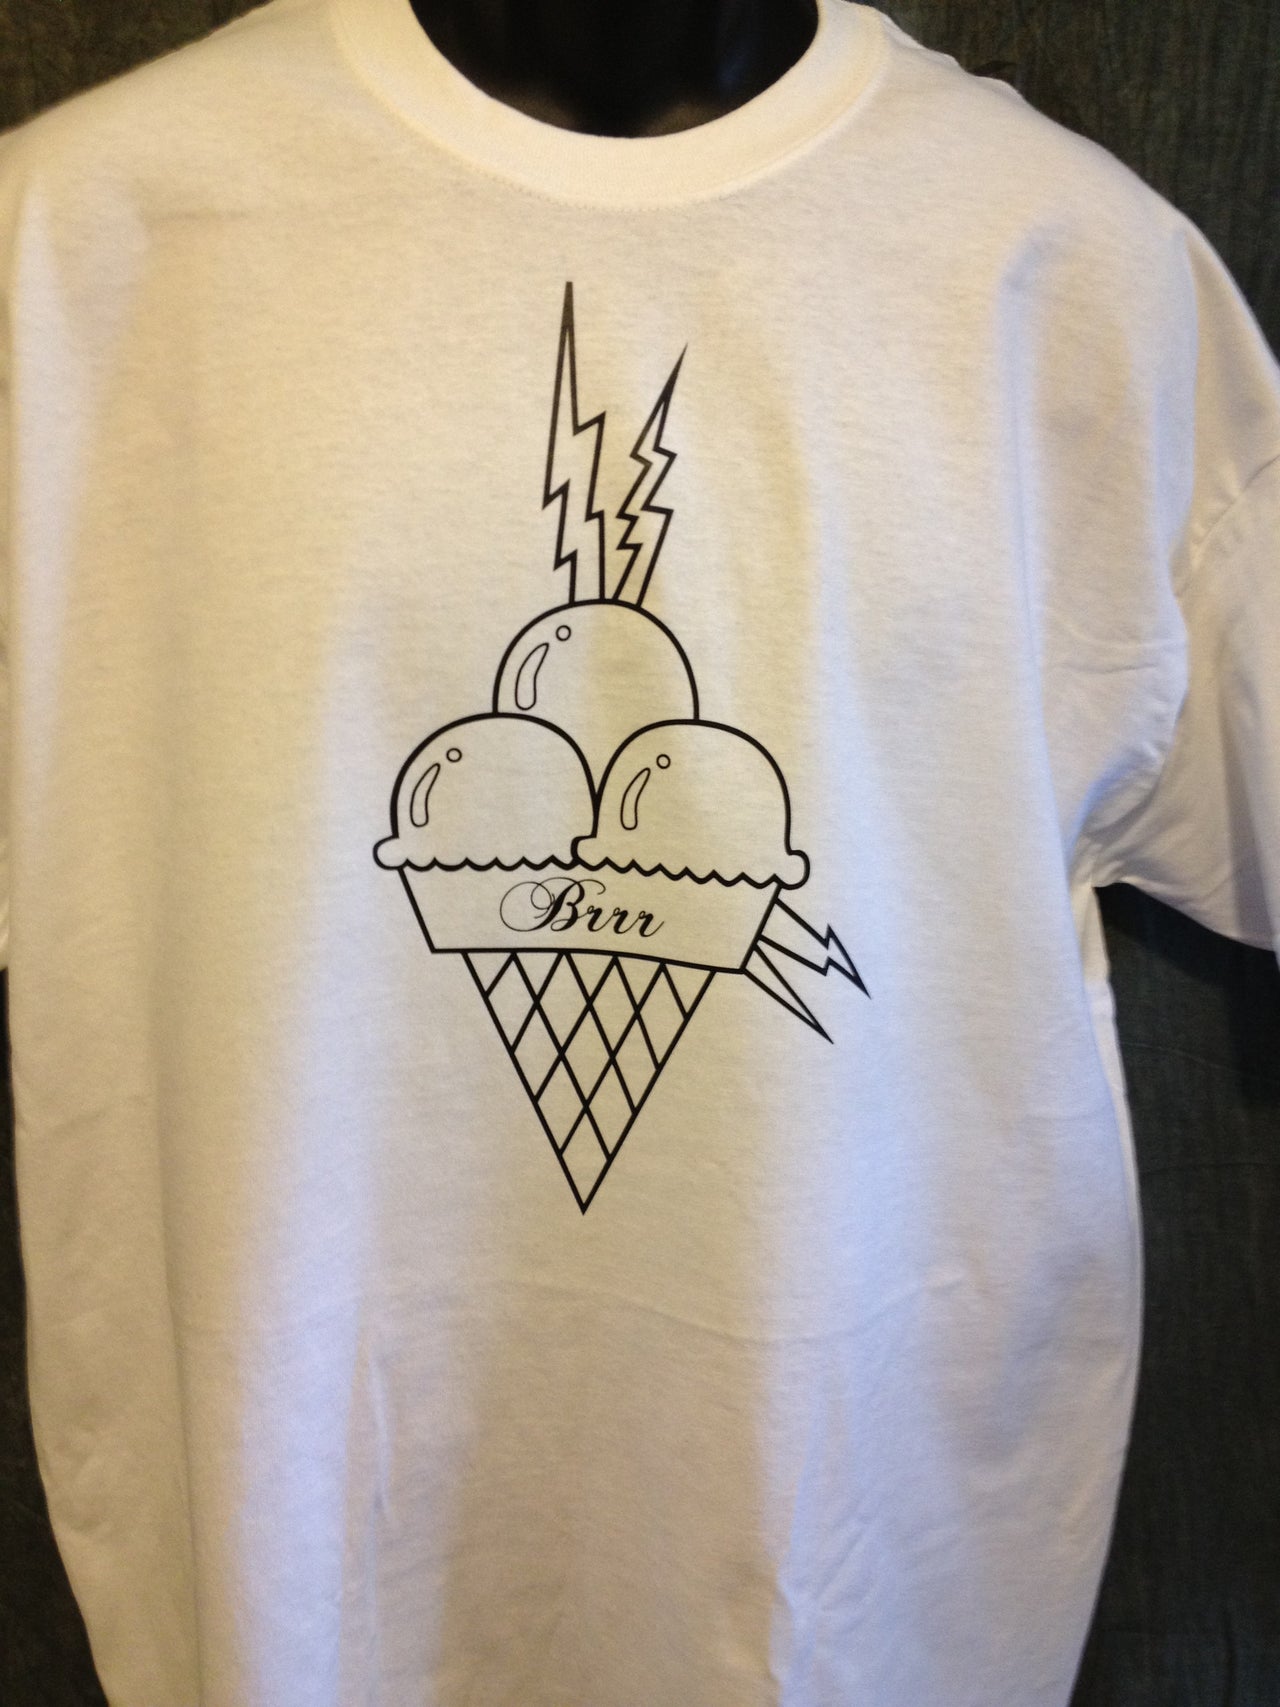 'Gucci Mane' Brrr Ice Cream Cone Tshirt - TshirtNow.net - 3